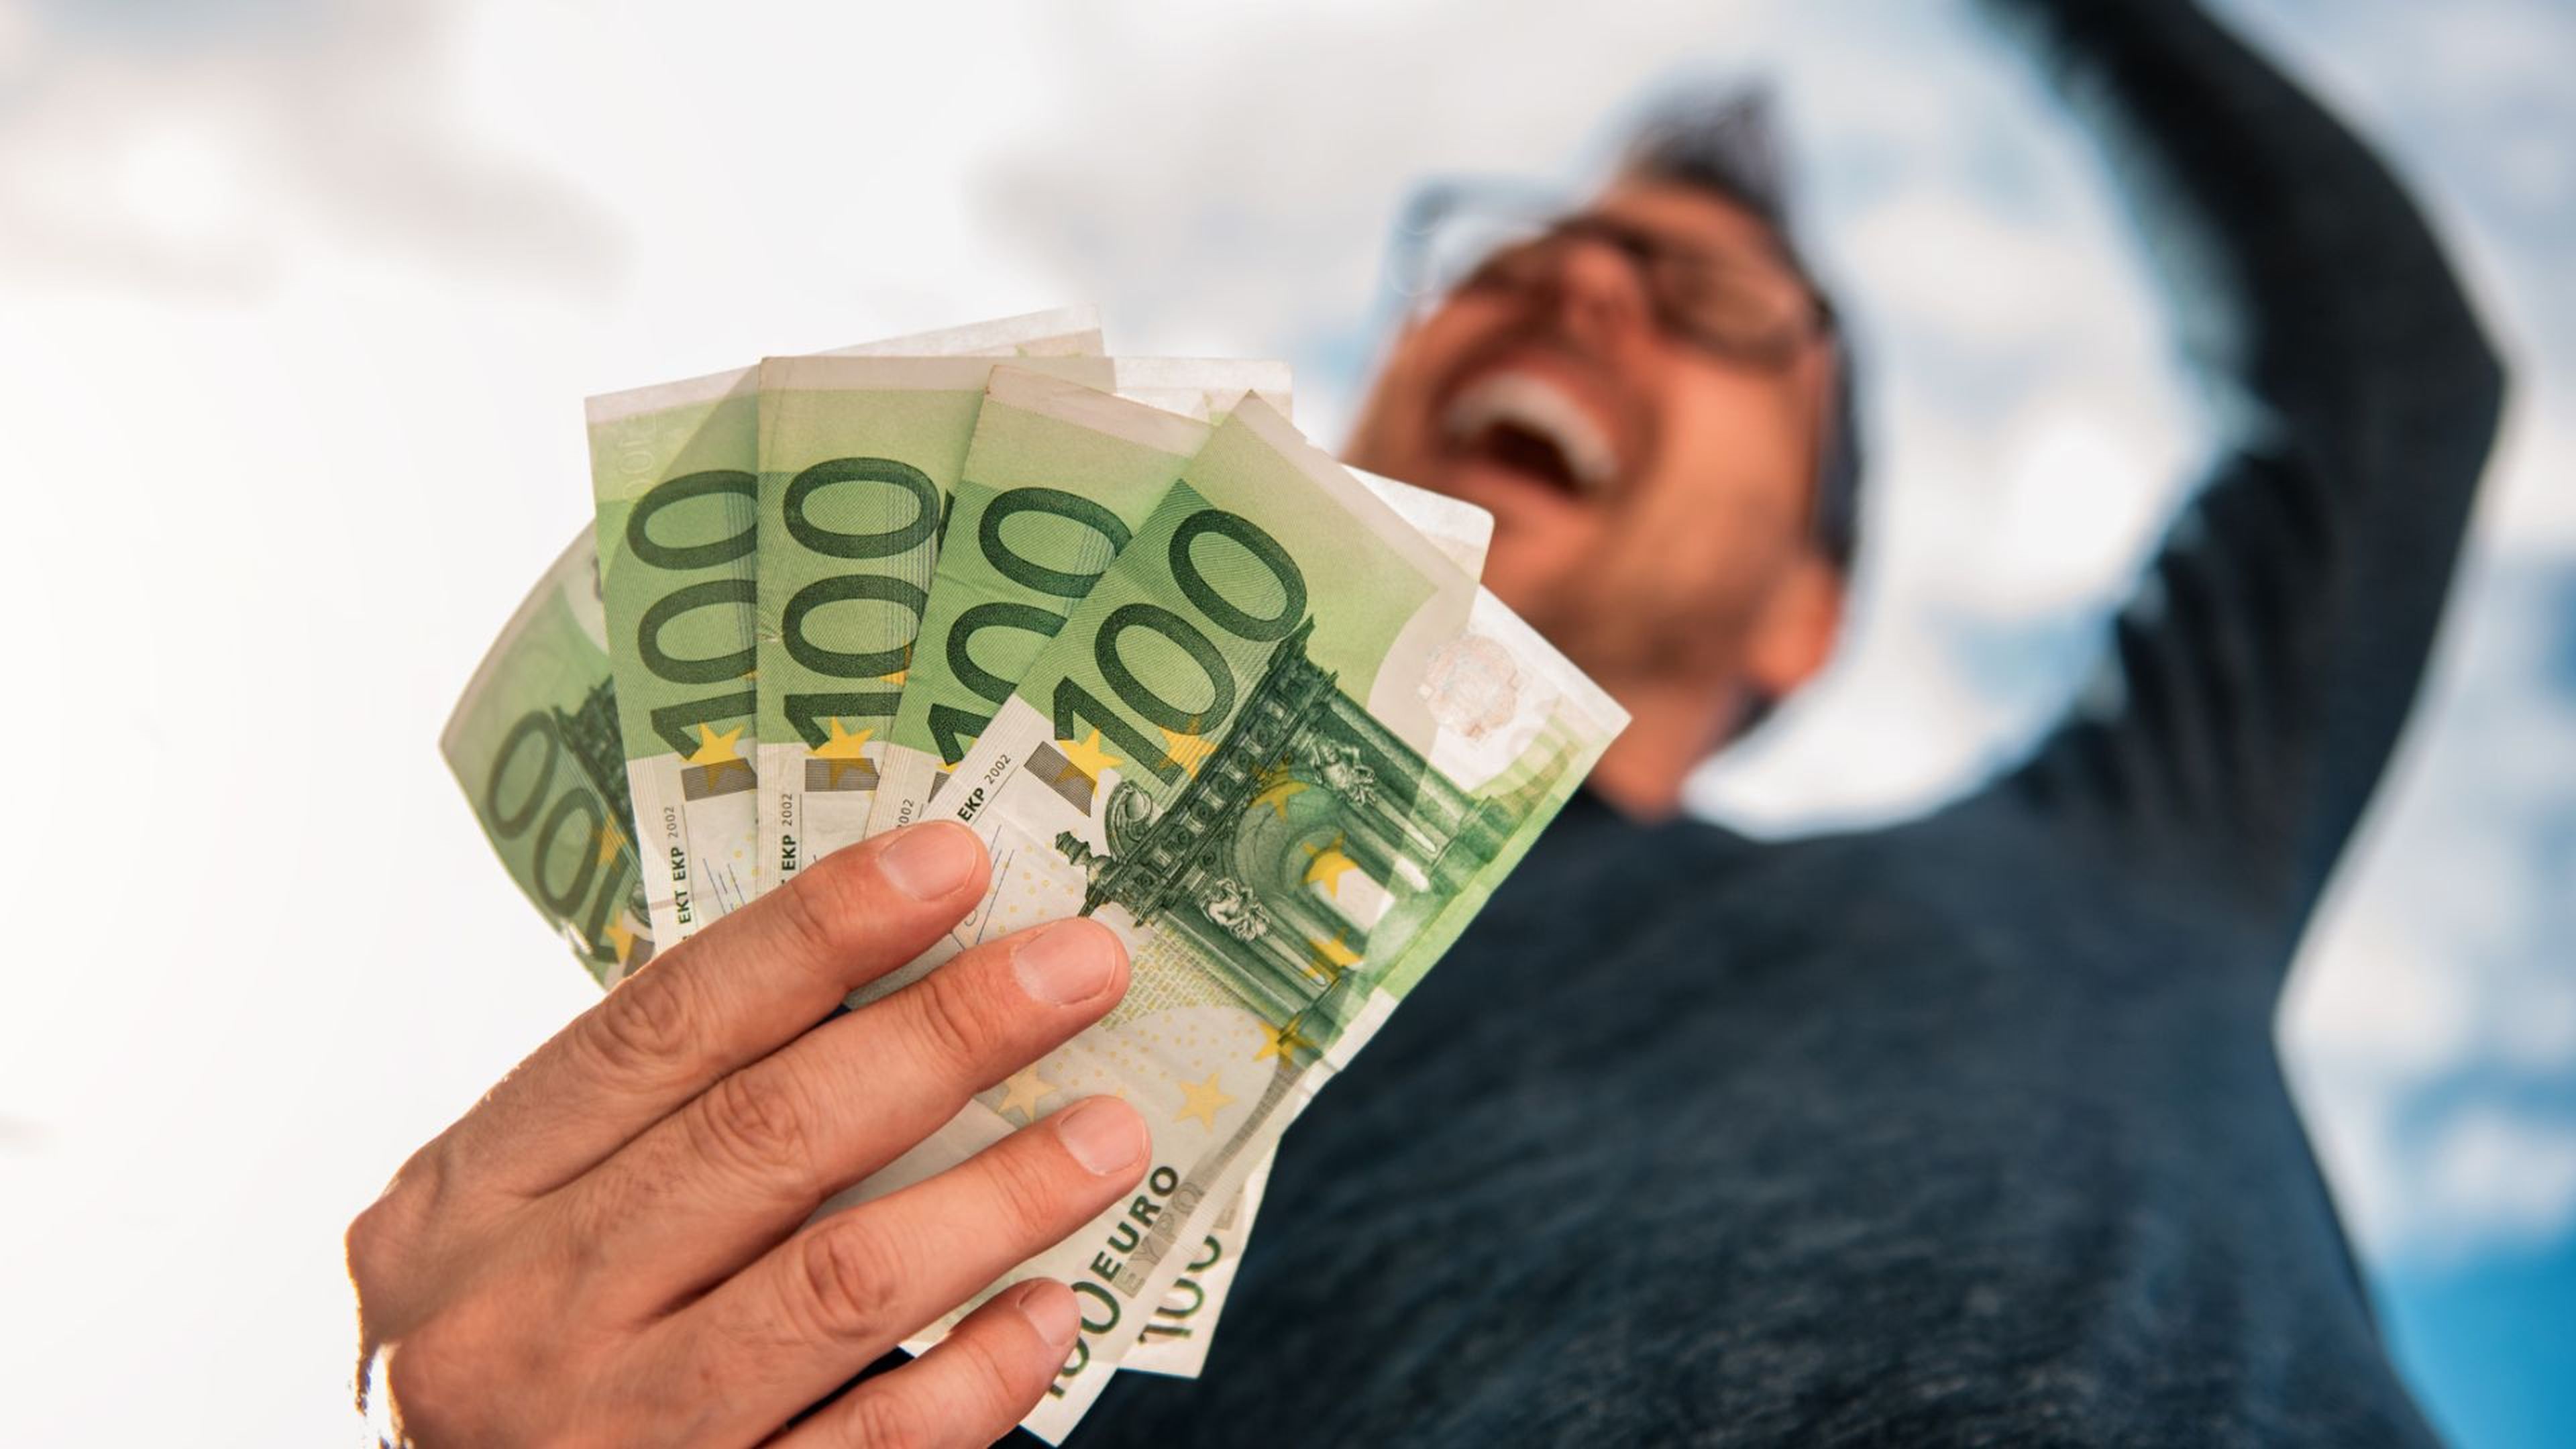 Una persona muy contenta con varios billetes de 100 euros en la mano.